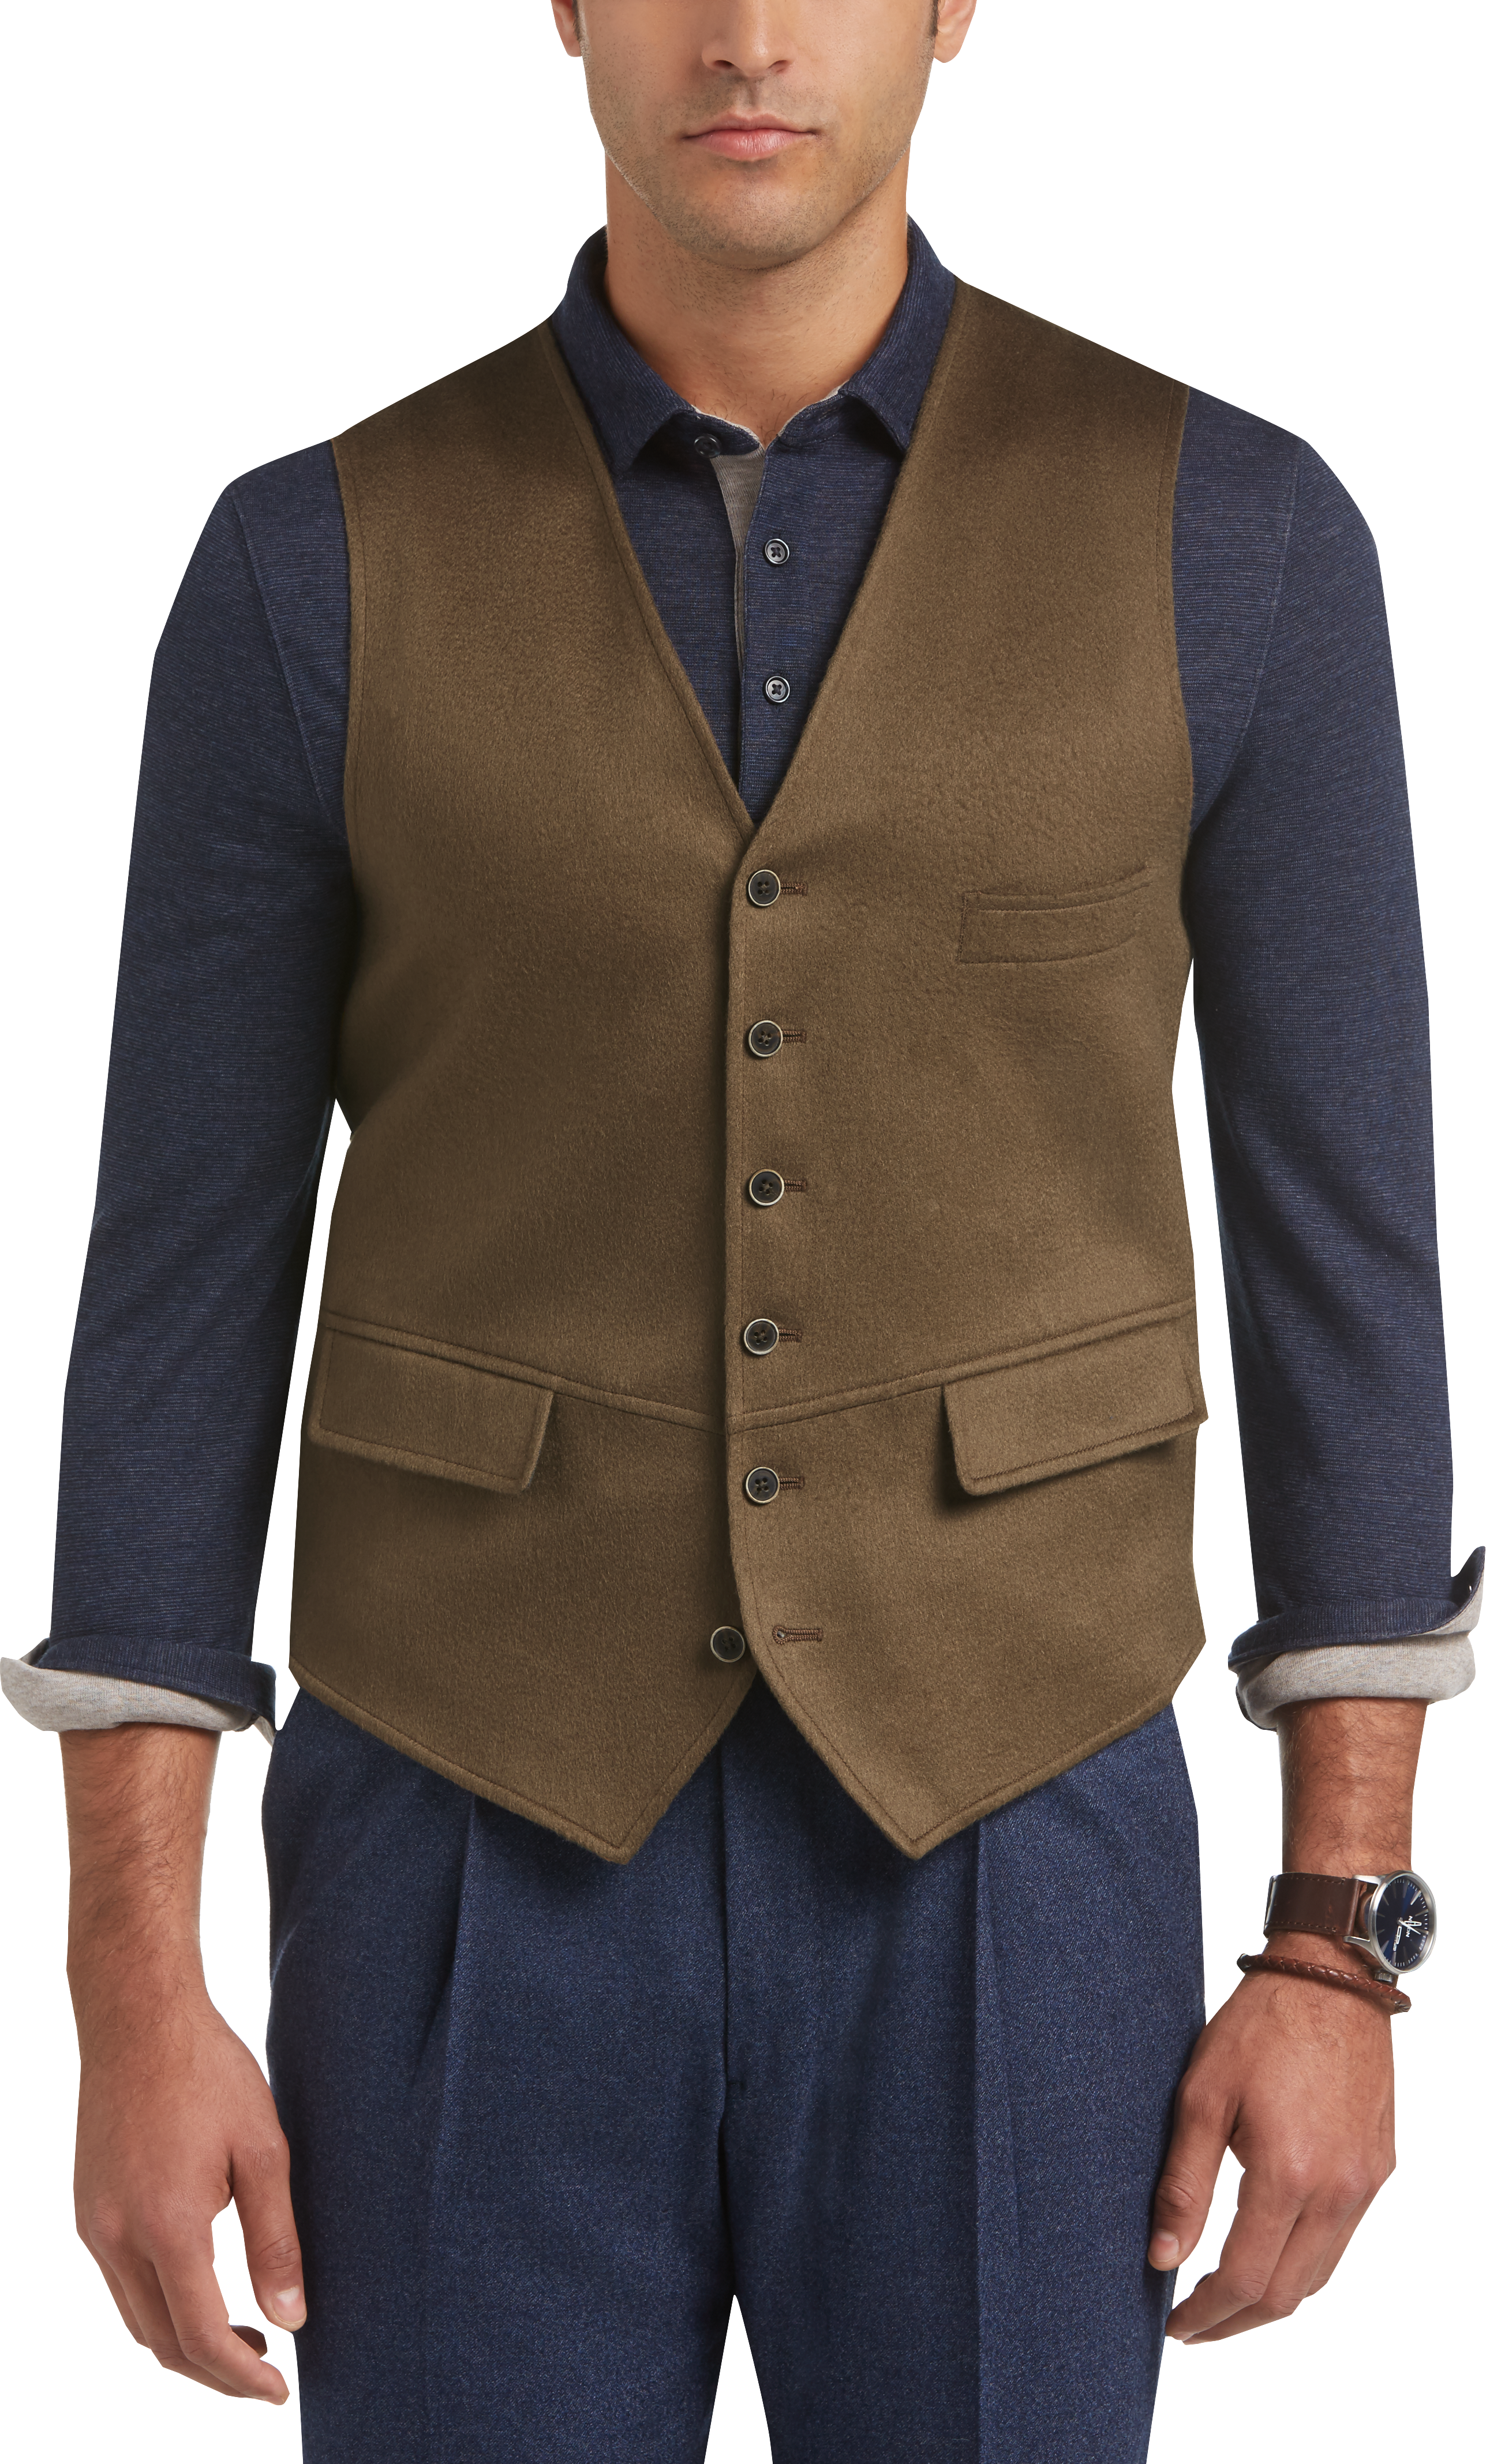 Joseph Abboud Collection Brown Cashmere Vest - Men's Brands | Men's ...